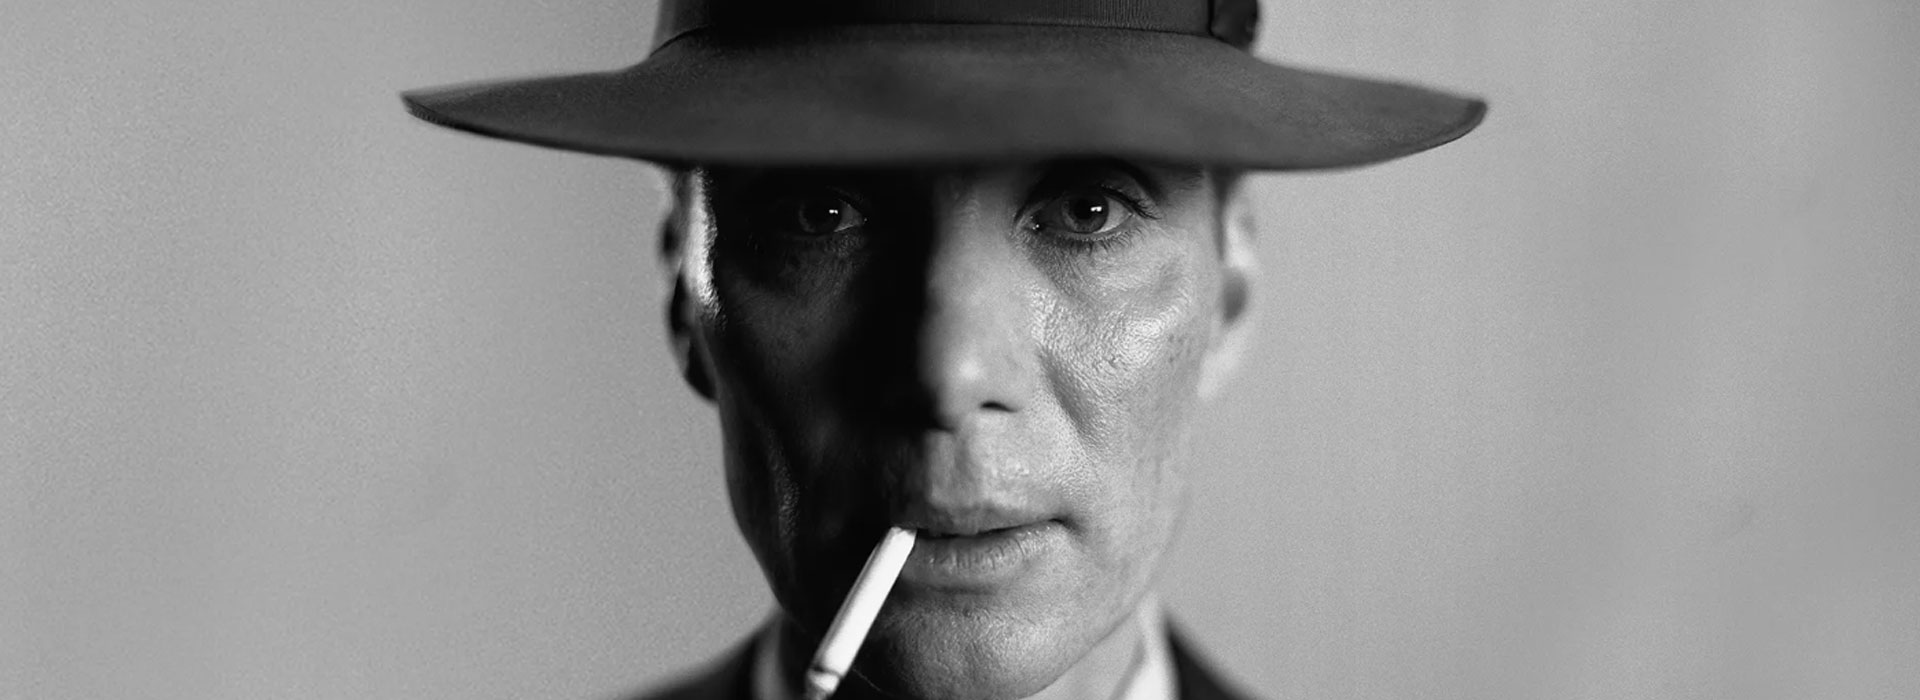 Los mejores cines para ver ‘Oppenheimer’, de Christopher Nolan